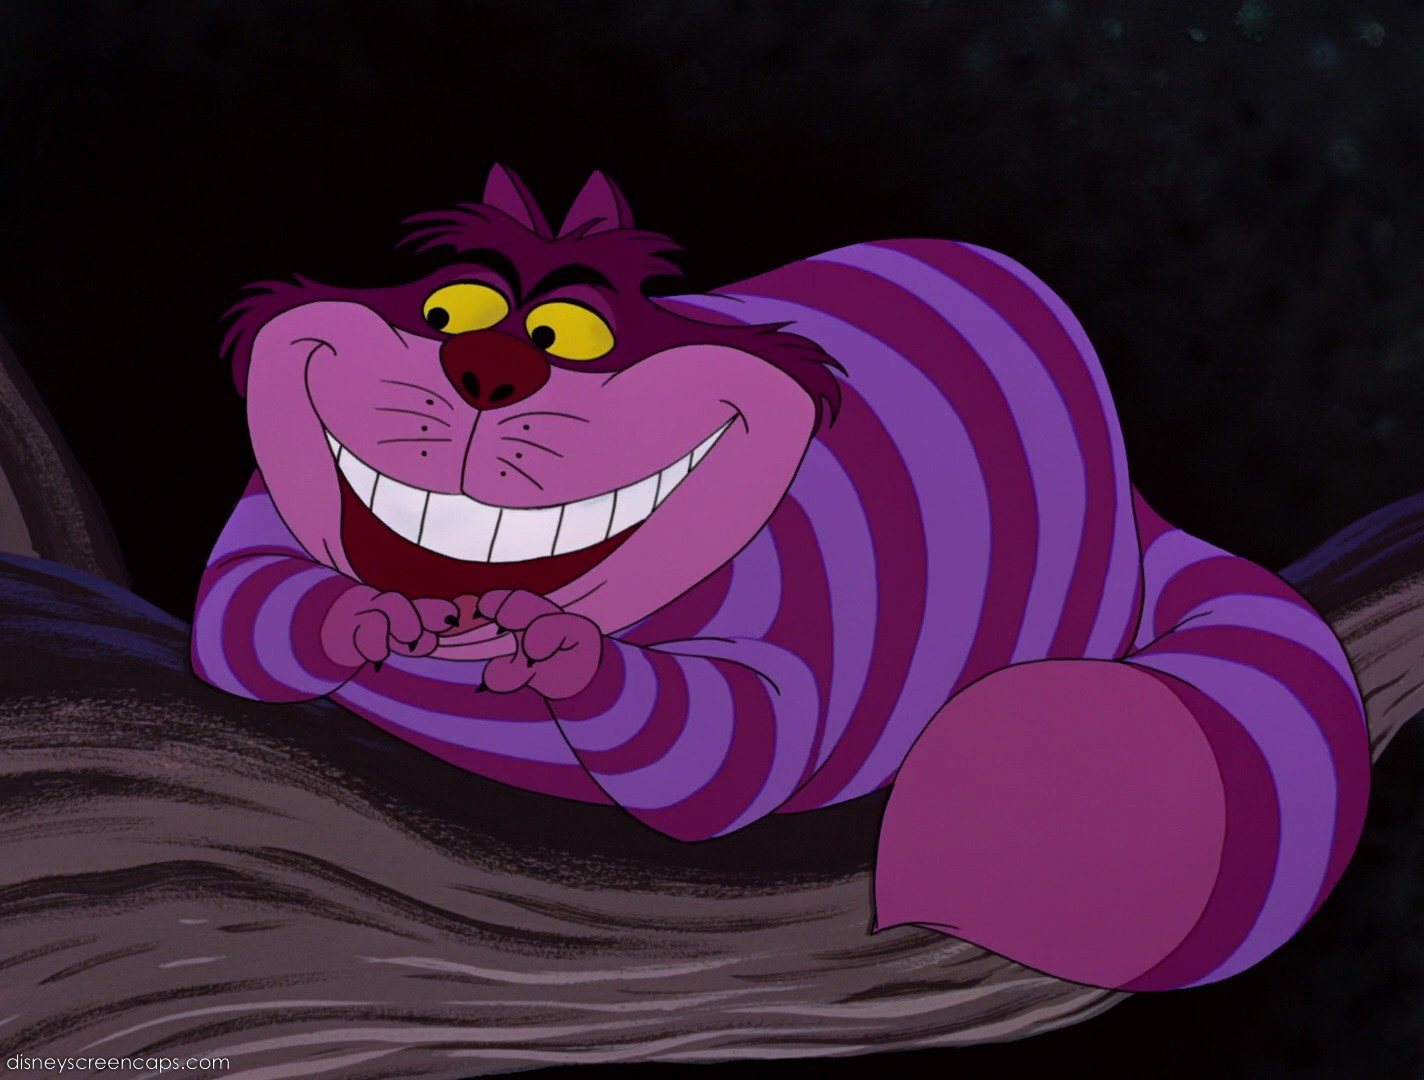 Disney Cheshire Cat Quotes. QuotesGram